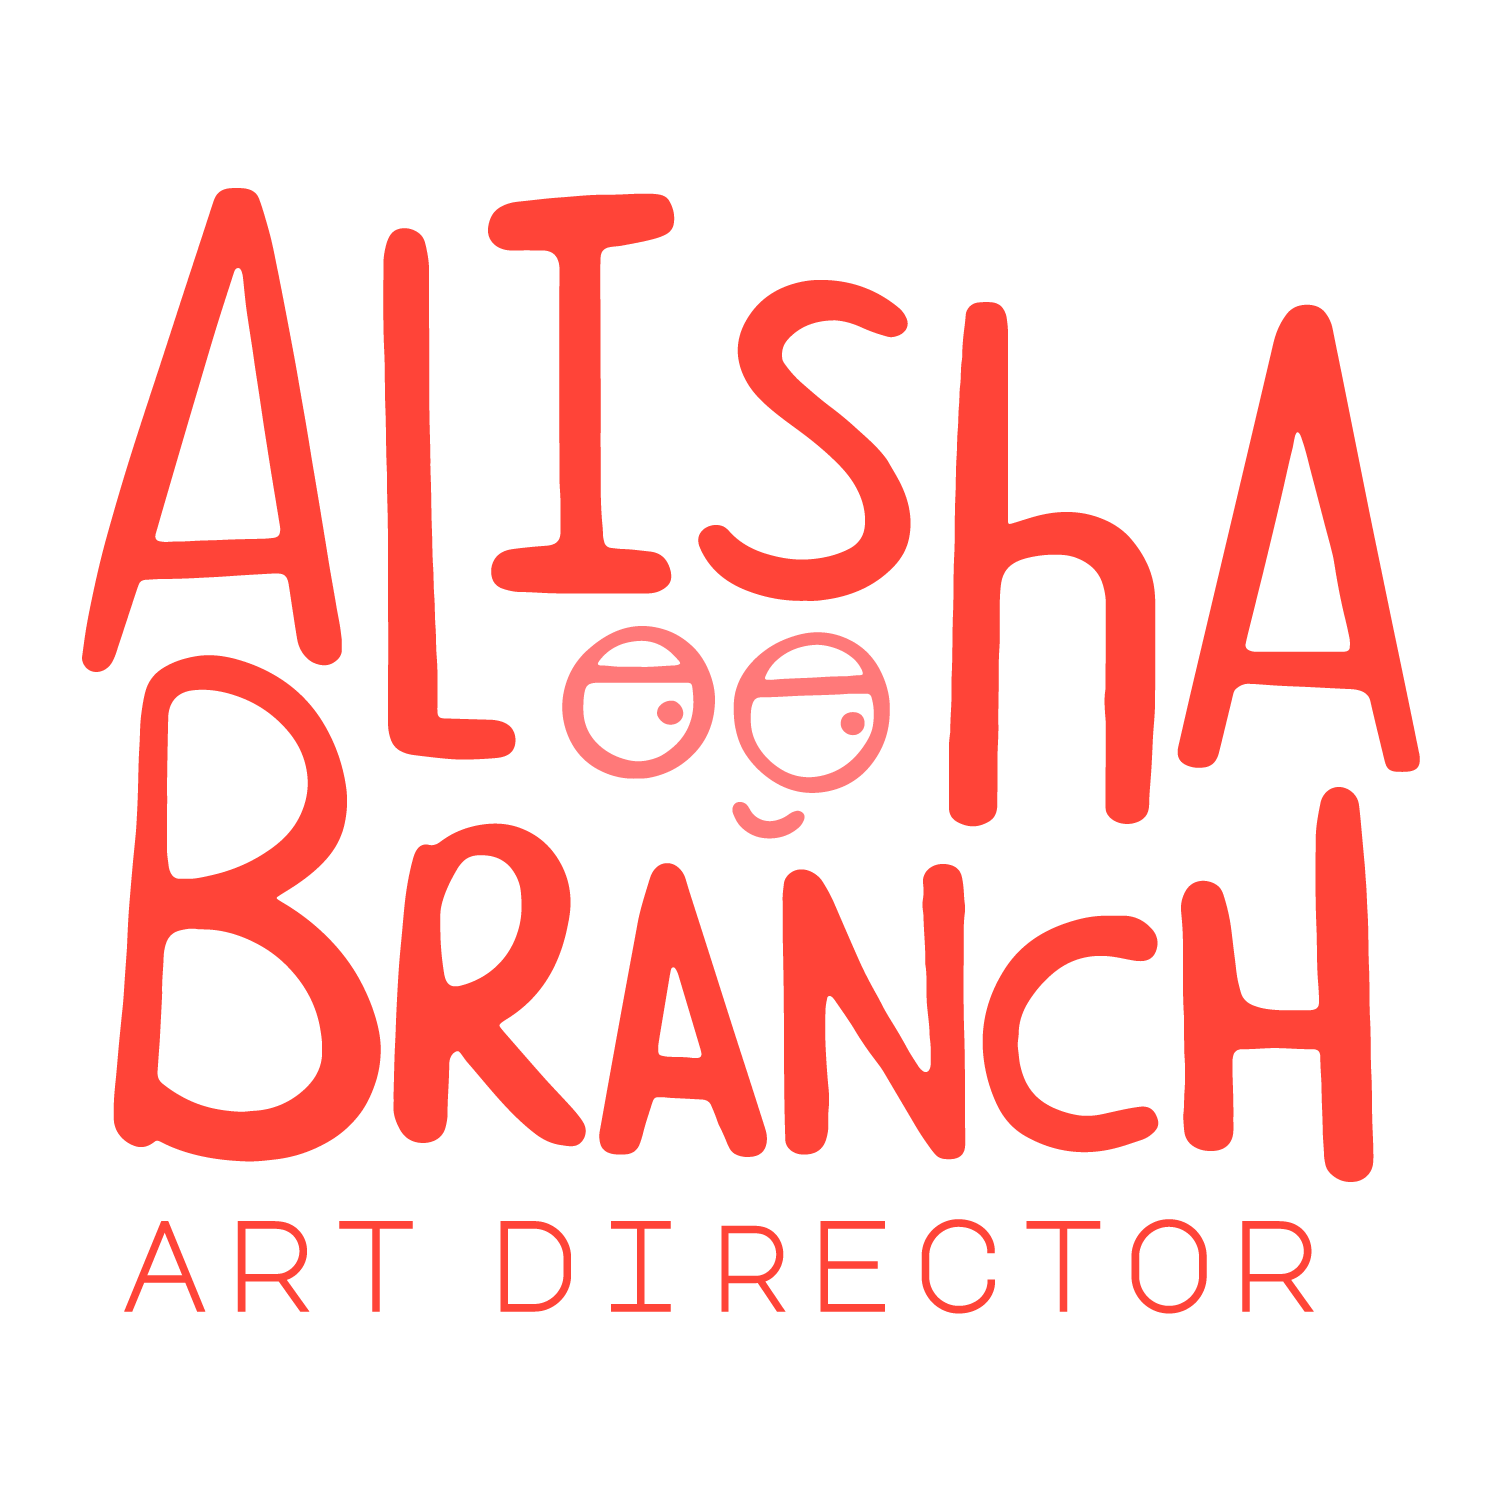 Alisha Branch